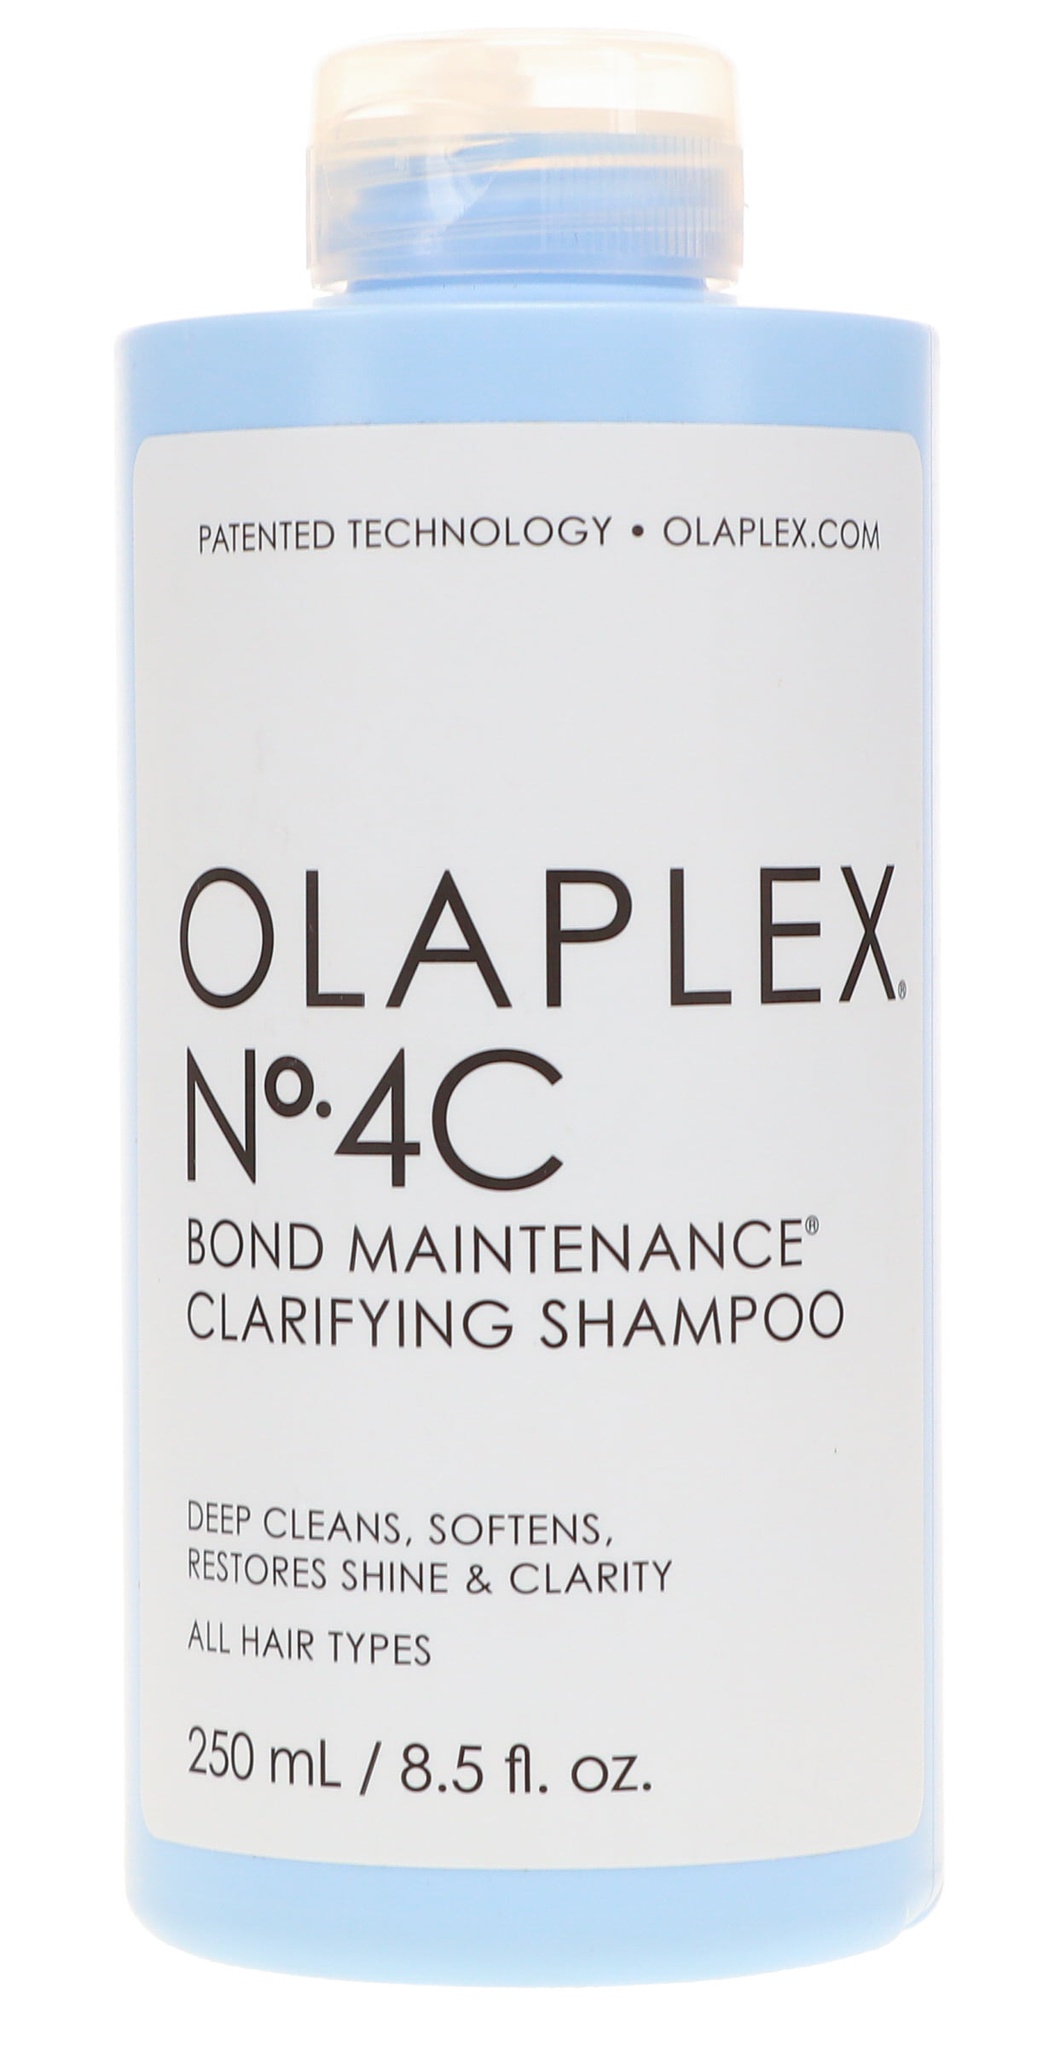 Olaplex N° 4c Bond Maintenance Clarifying Shampoo